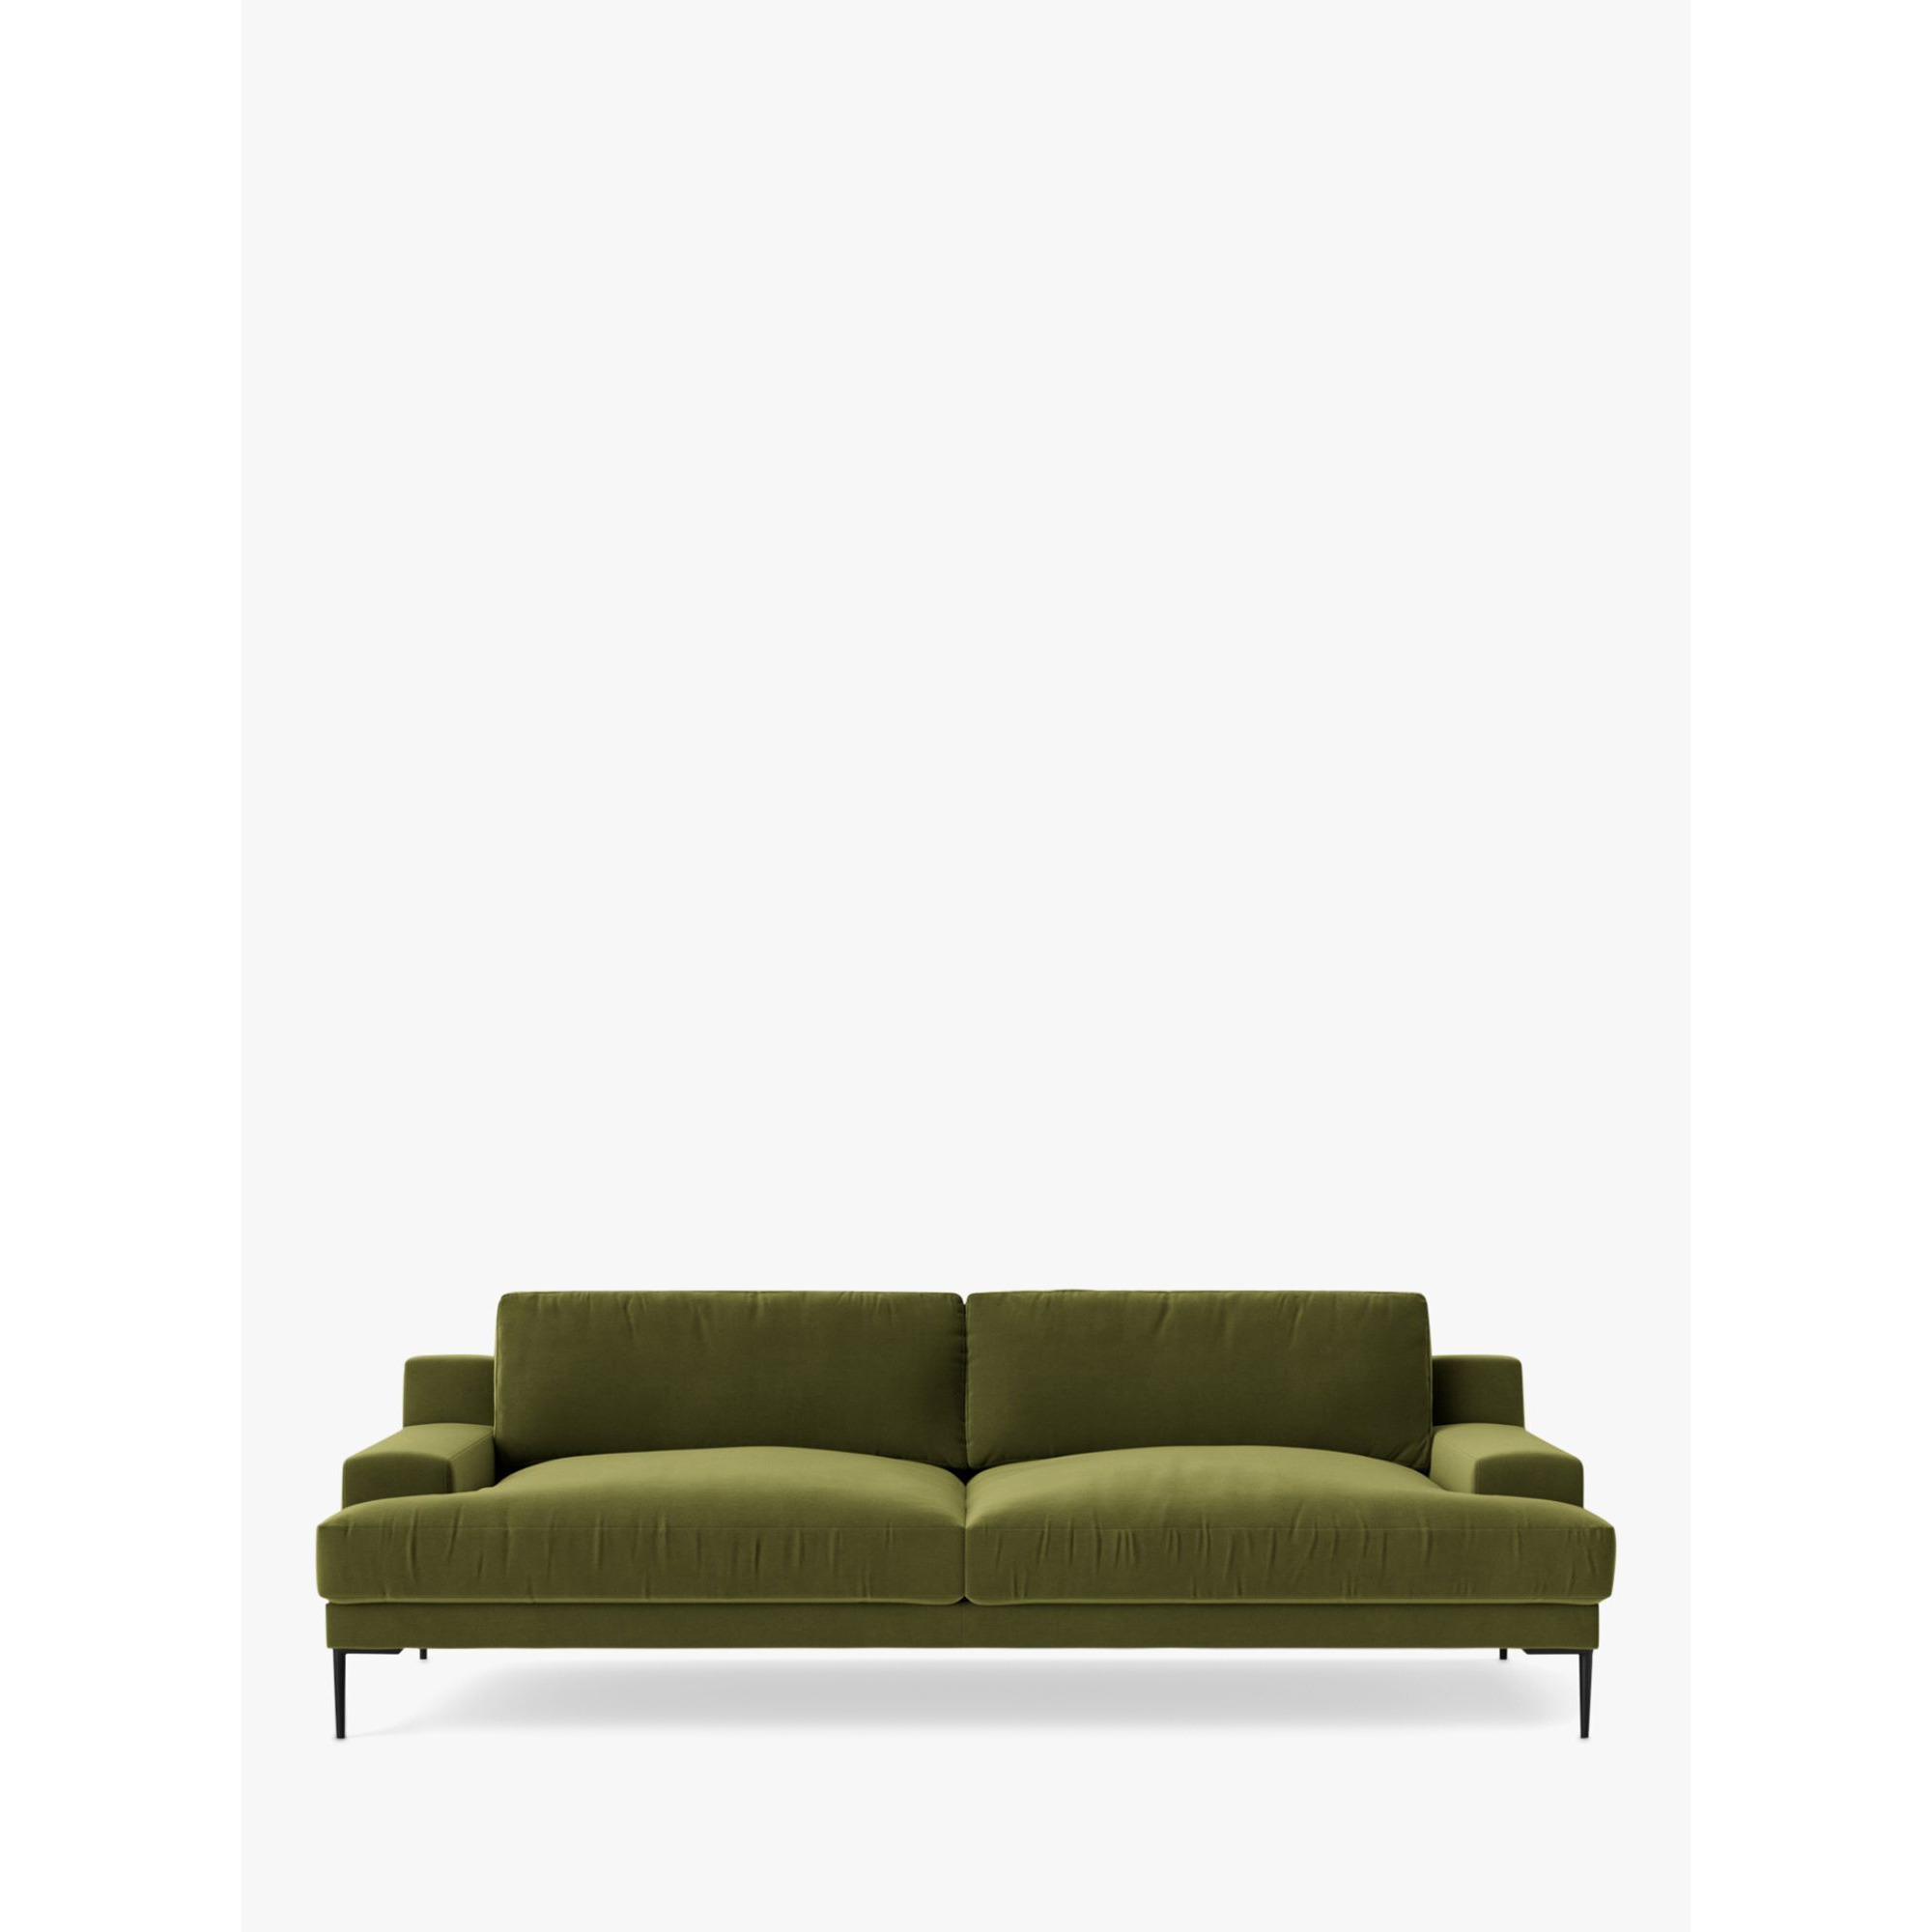 Swoon Almera Large 3 Seater Sofa, Metal Leg - image 1